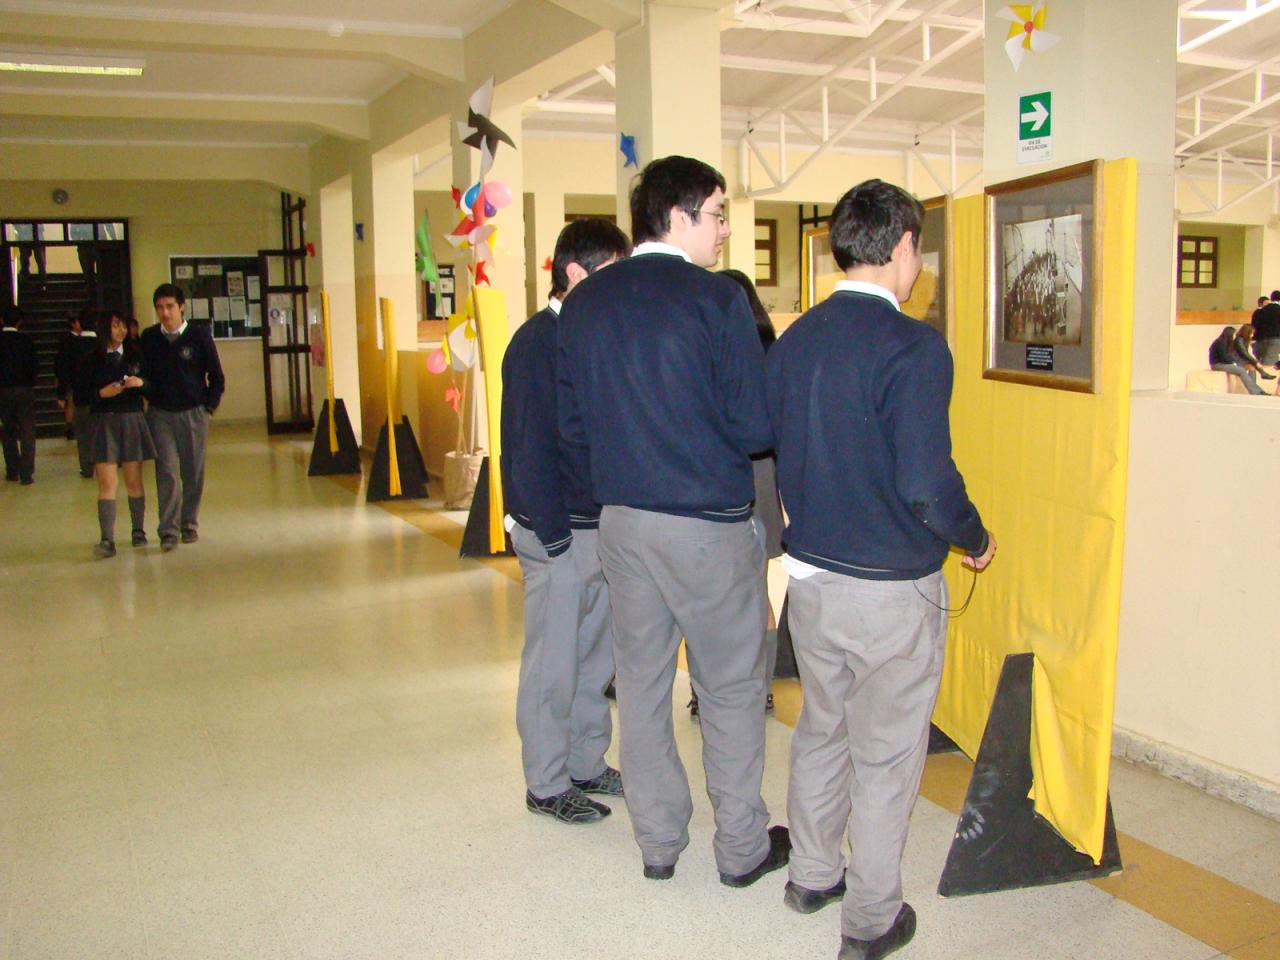 Alumnos observando exposición.